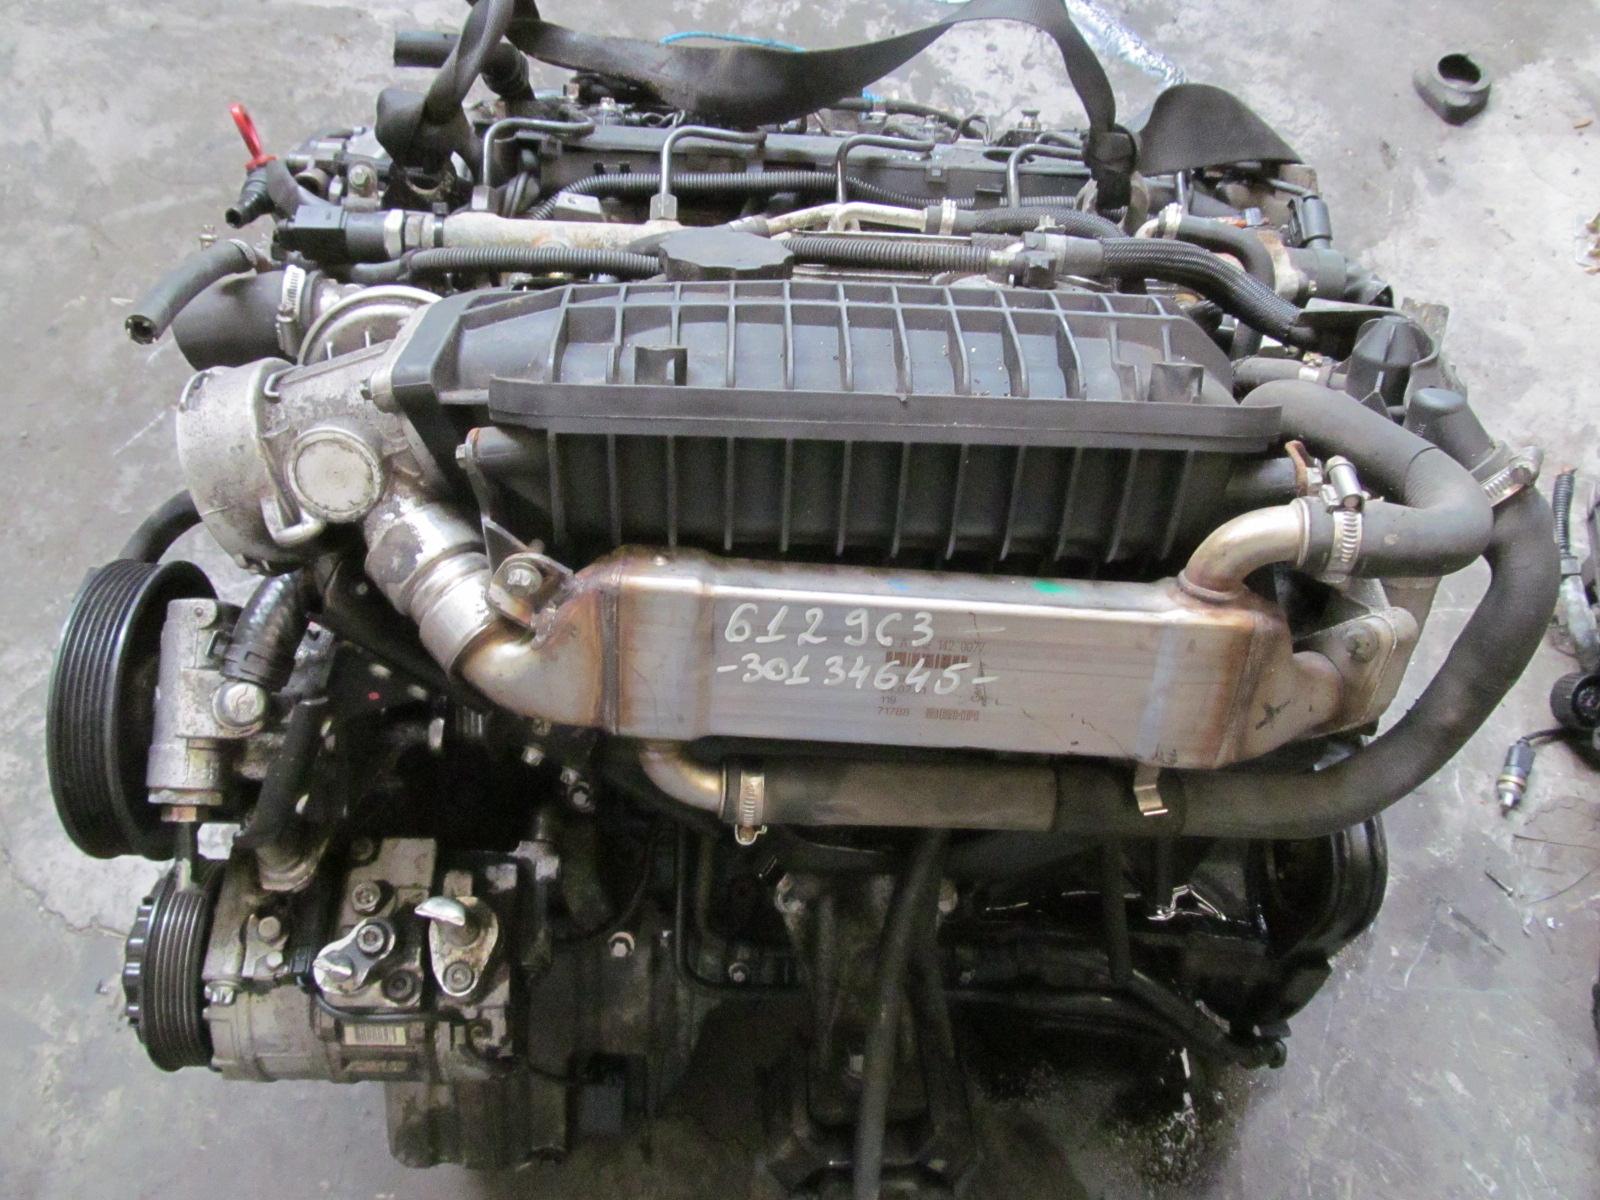 Mercedes ml270 engine #6